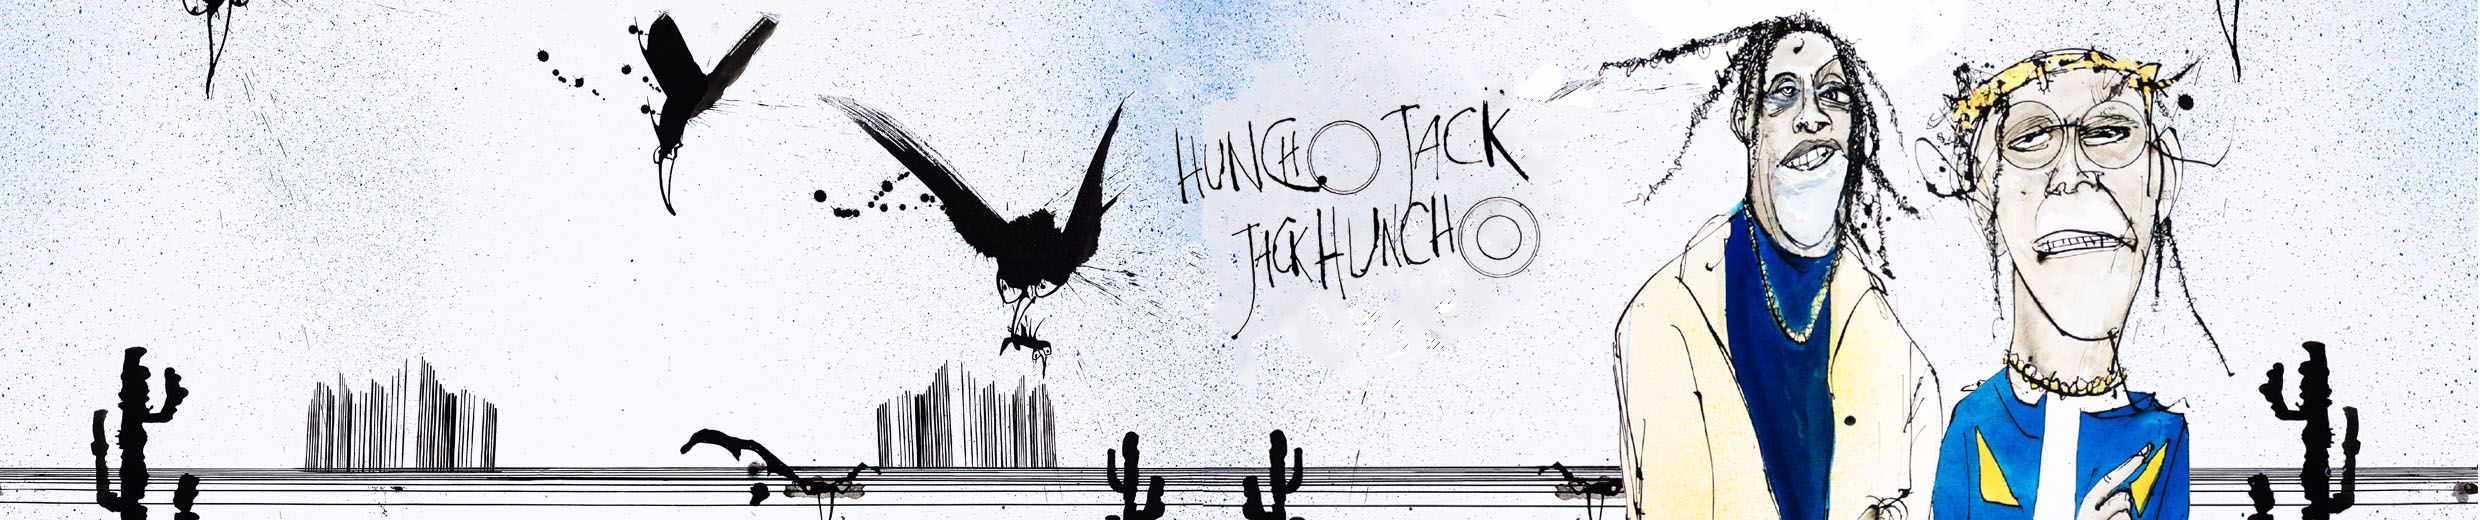 Stream Eye 2 Eye (feat. Takeoff) by HUNCHO JACK | Listen online for free on  SoundCloud